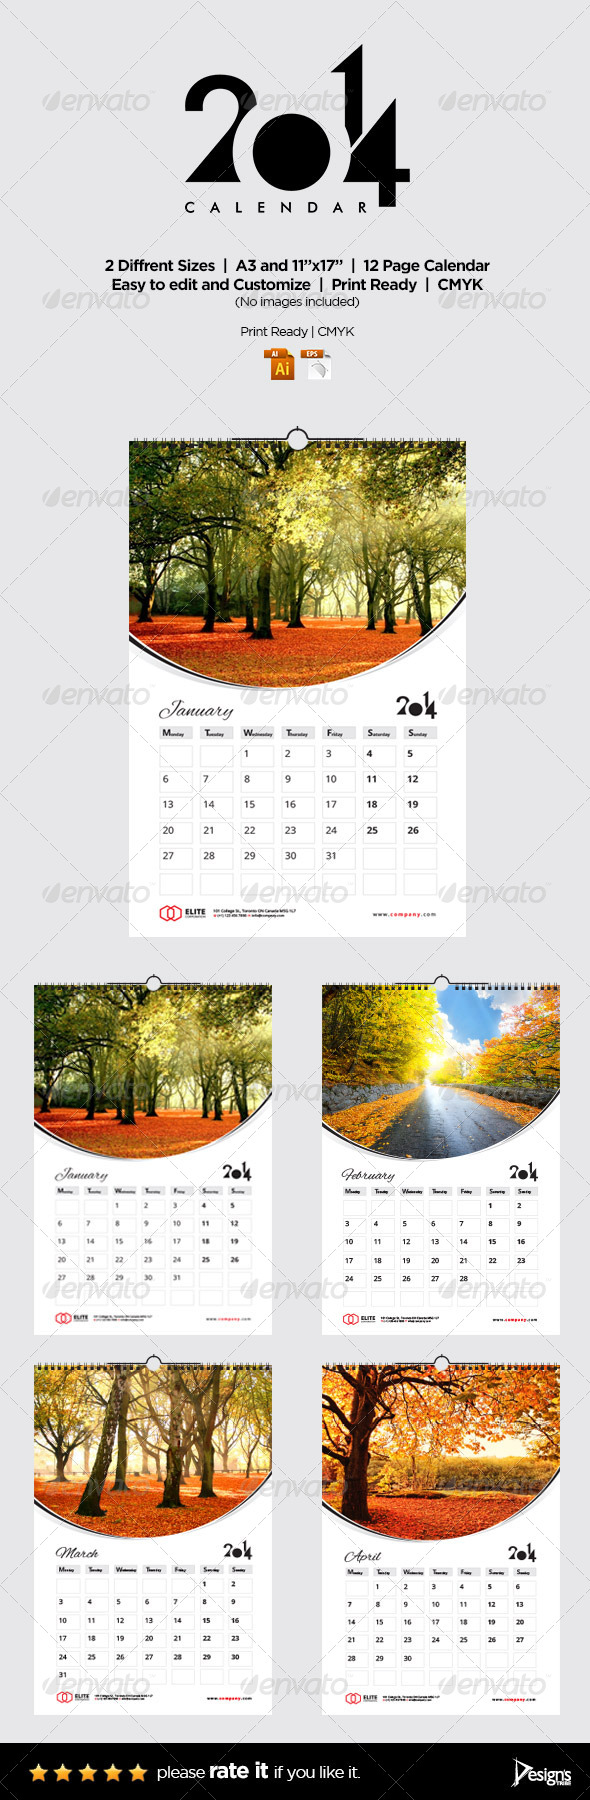 Wall Calendar 2014 Vol 2